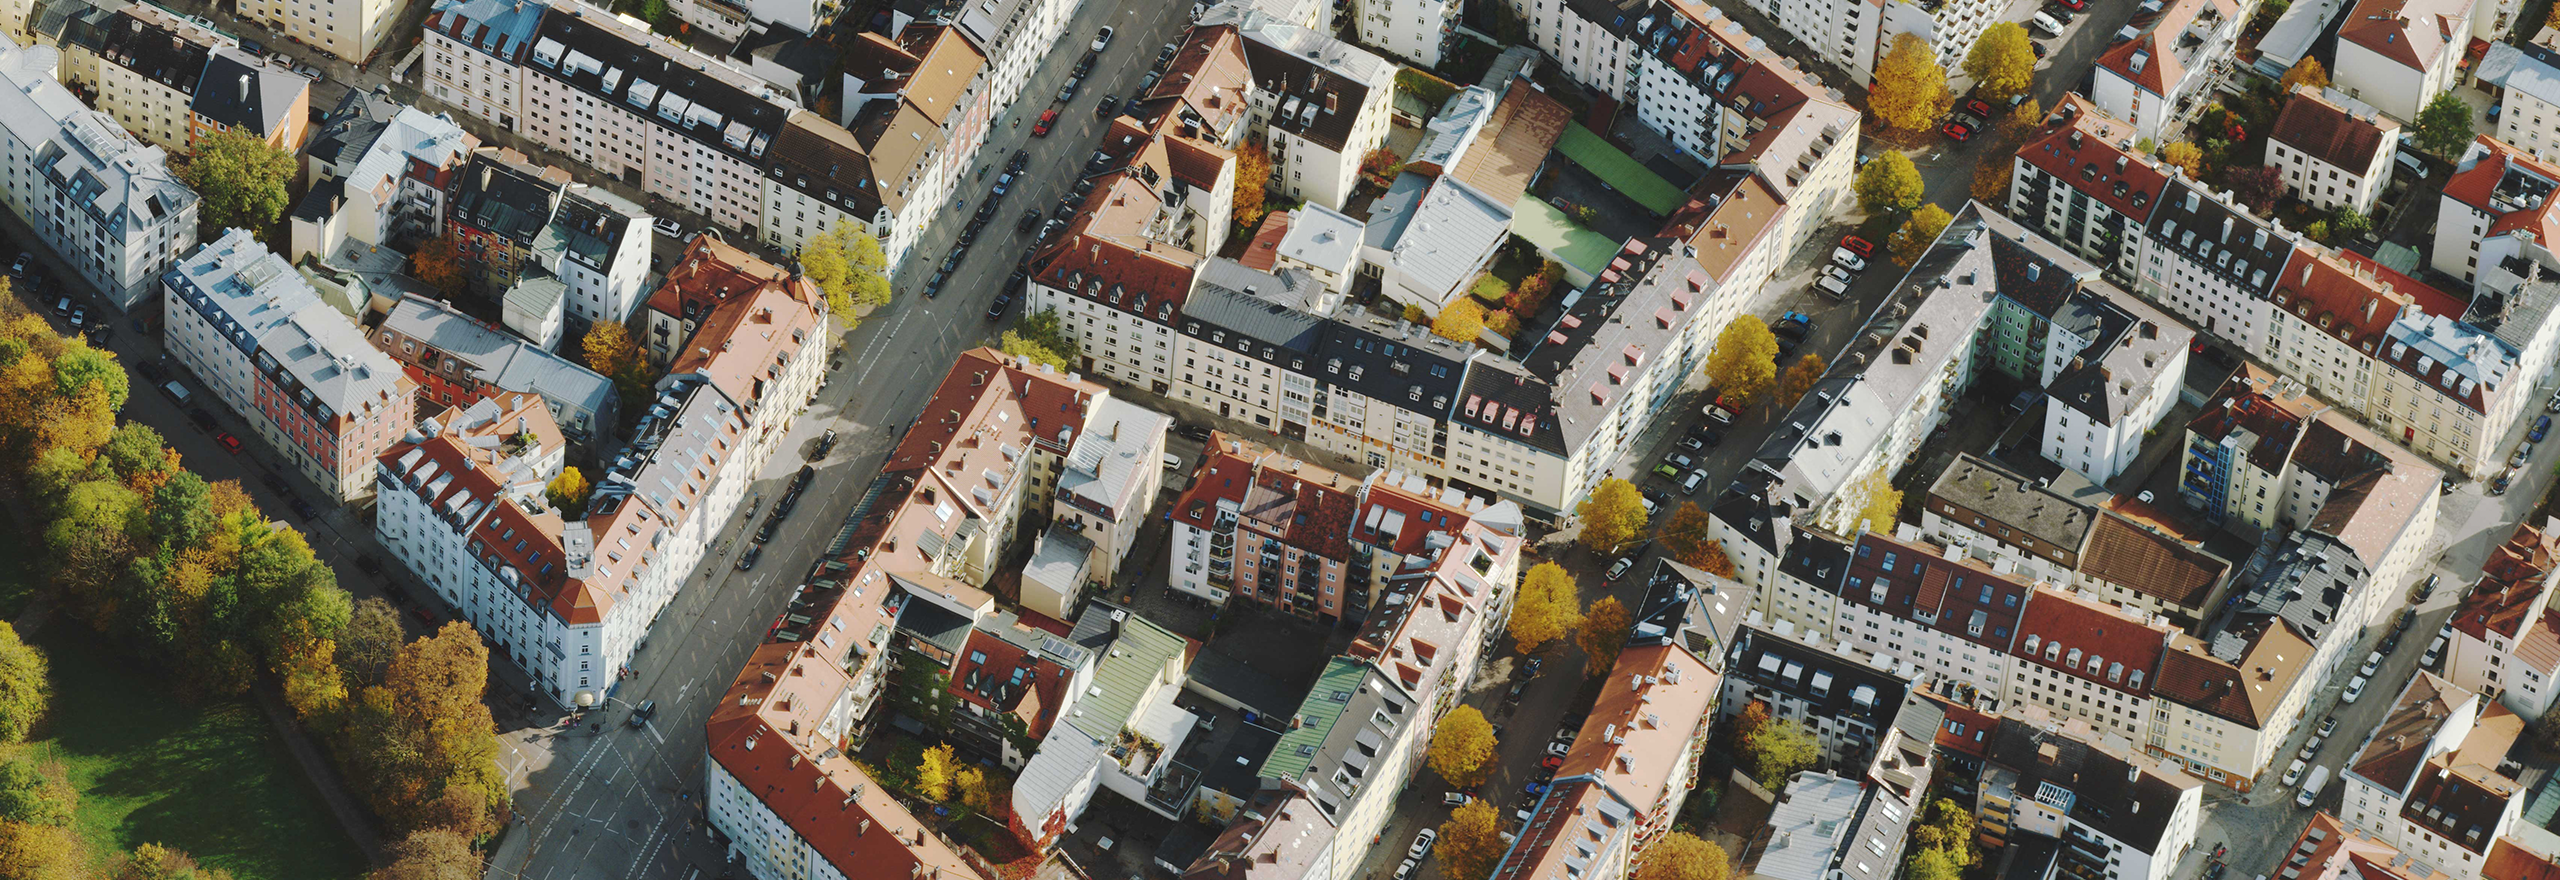 Imagens aéreas oblíquas de alta resolução de edifícios em Munique